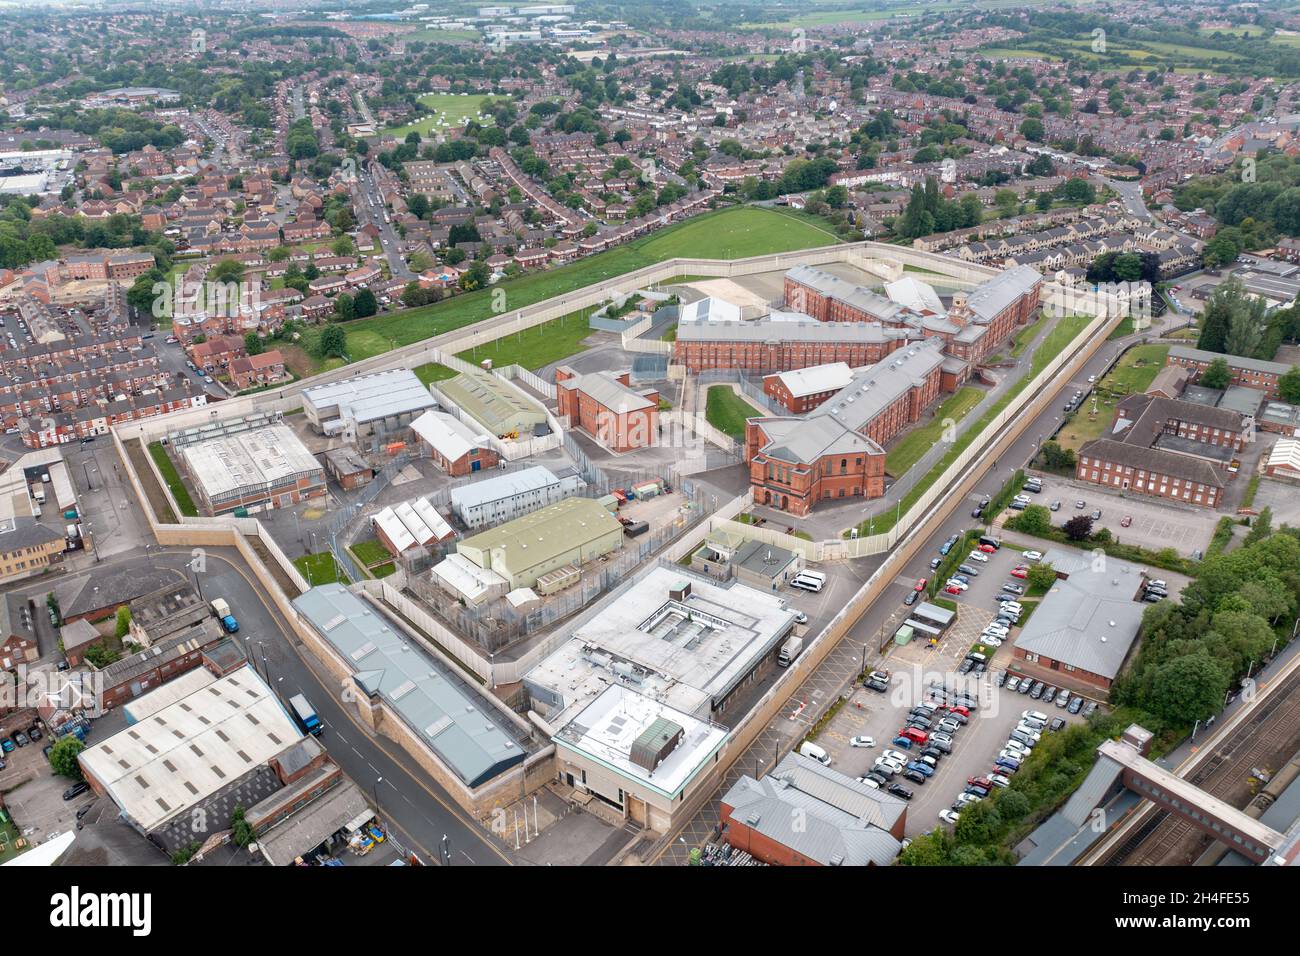 Luftaufnahmen mit Drohnen vom Stadtzentrum von Wakefield in West Yorkshire in Großbritannien, die das Hauptgebäude und die Wände des Gefängnisses von her Majesty zeigen Stockfoto